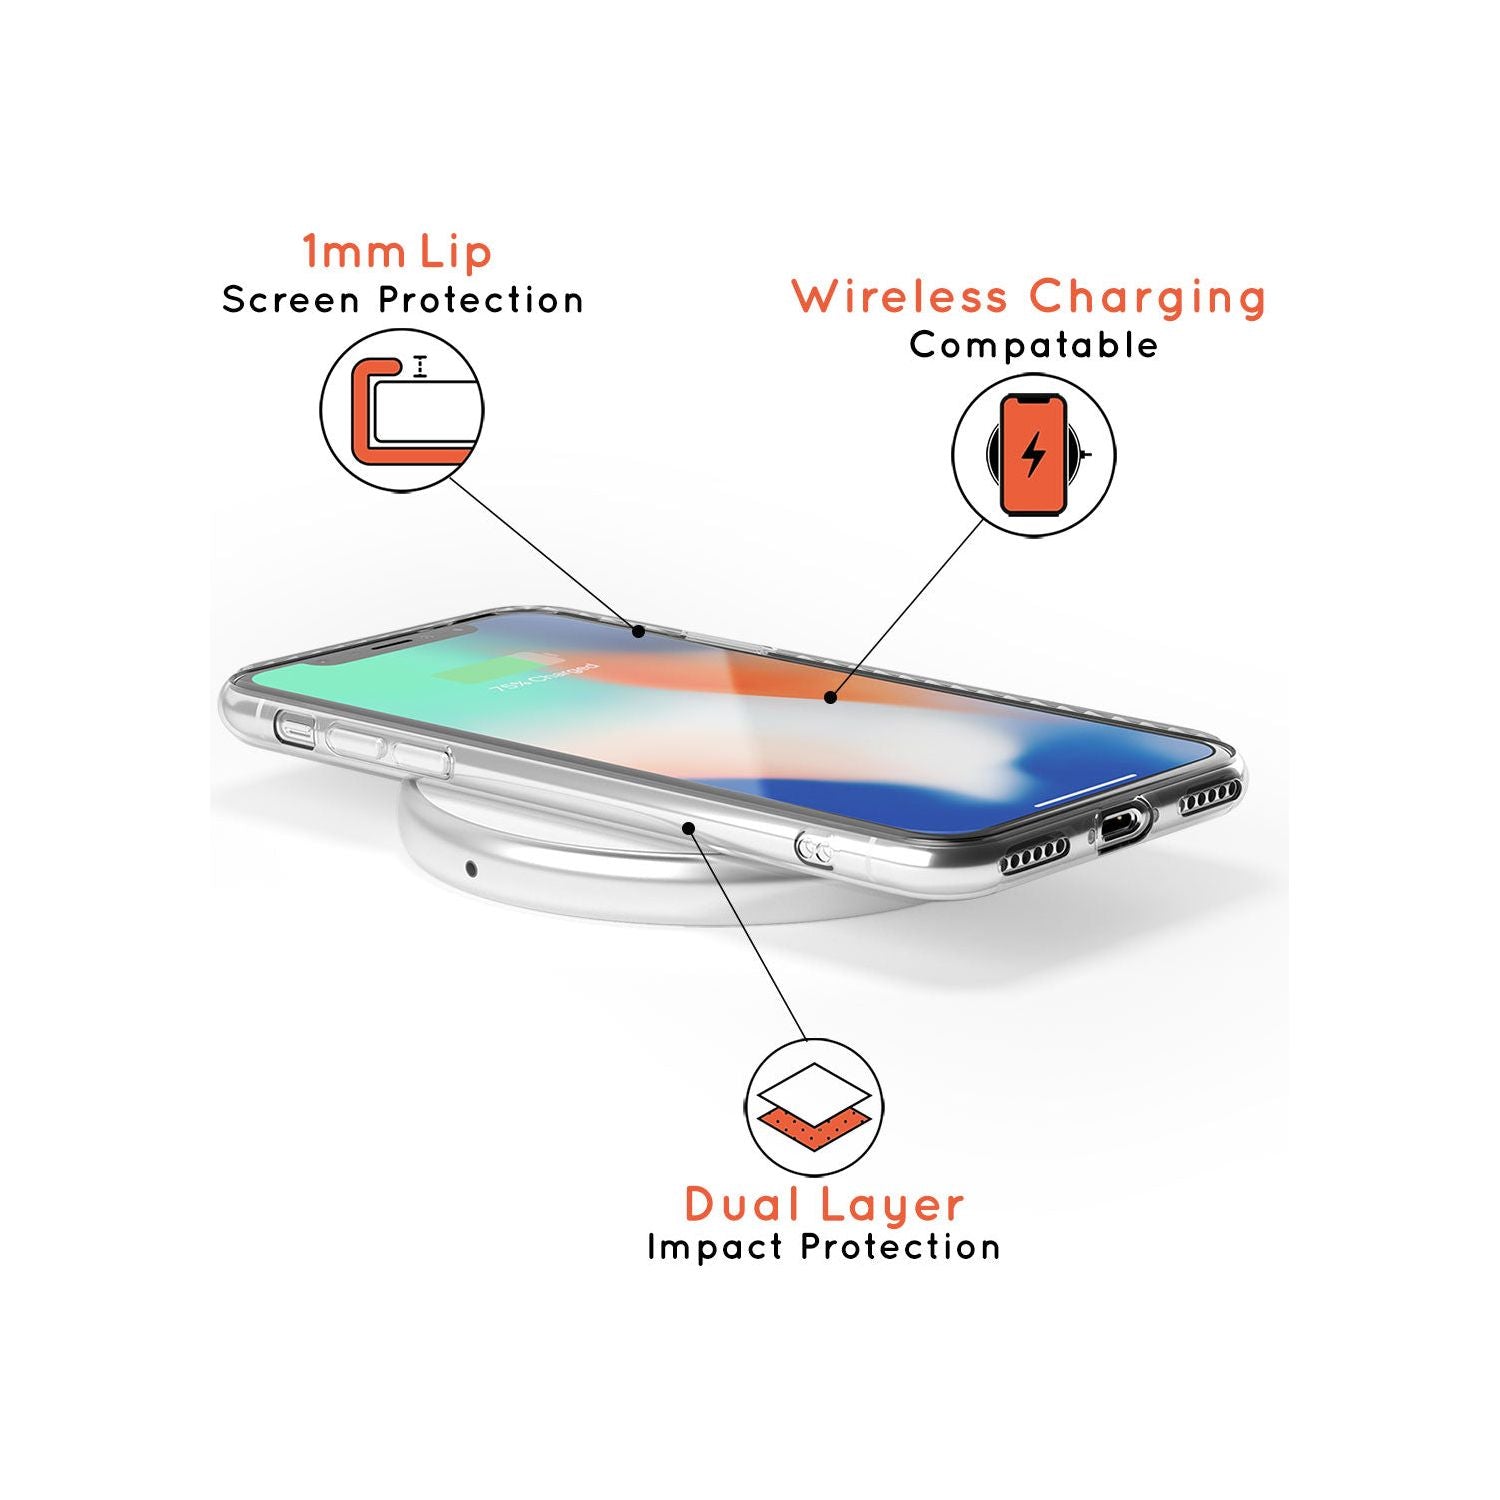 Libra Emblem - Transparent Design Slim TPU Phone Case for iPhone SE 8 7 Plus